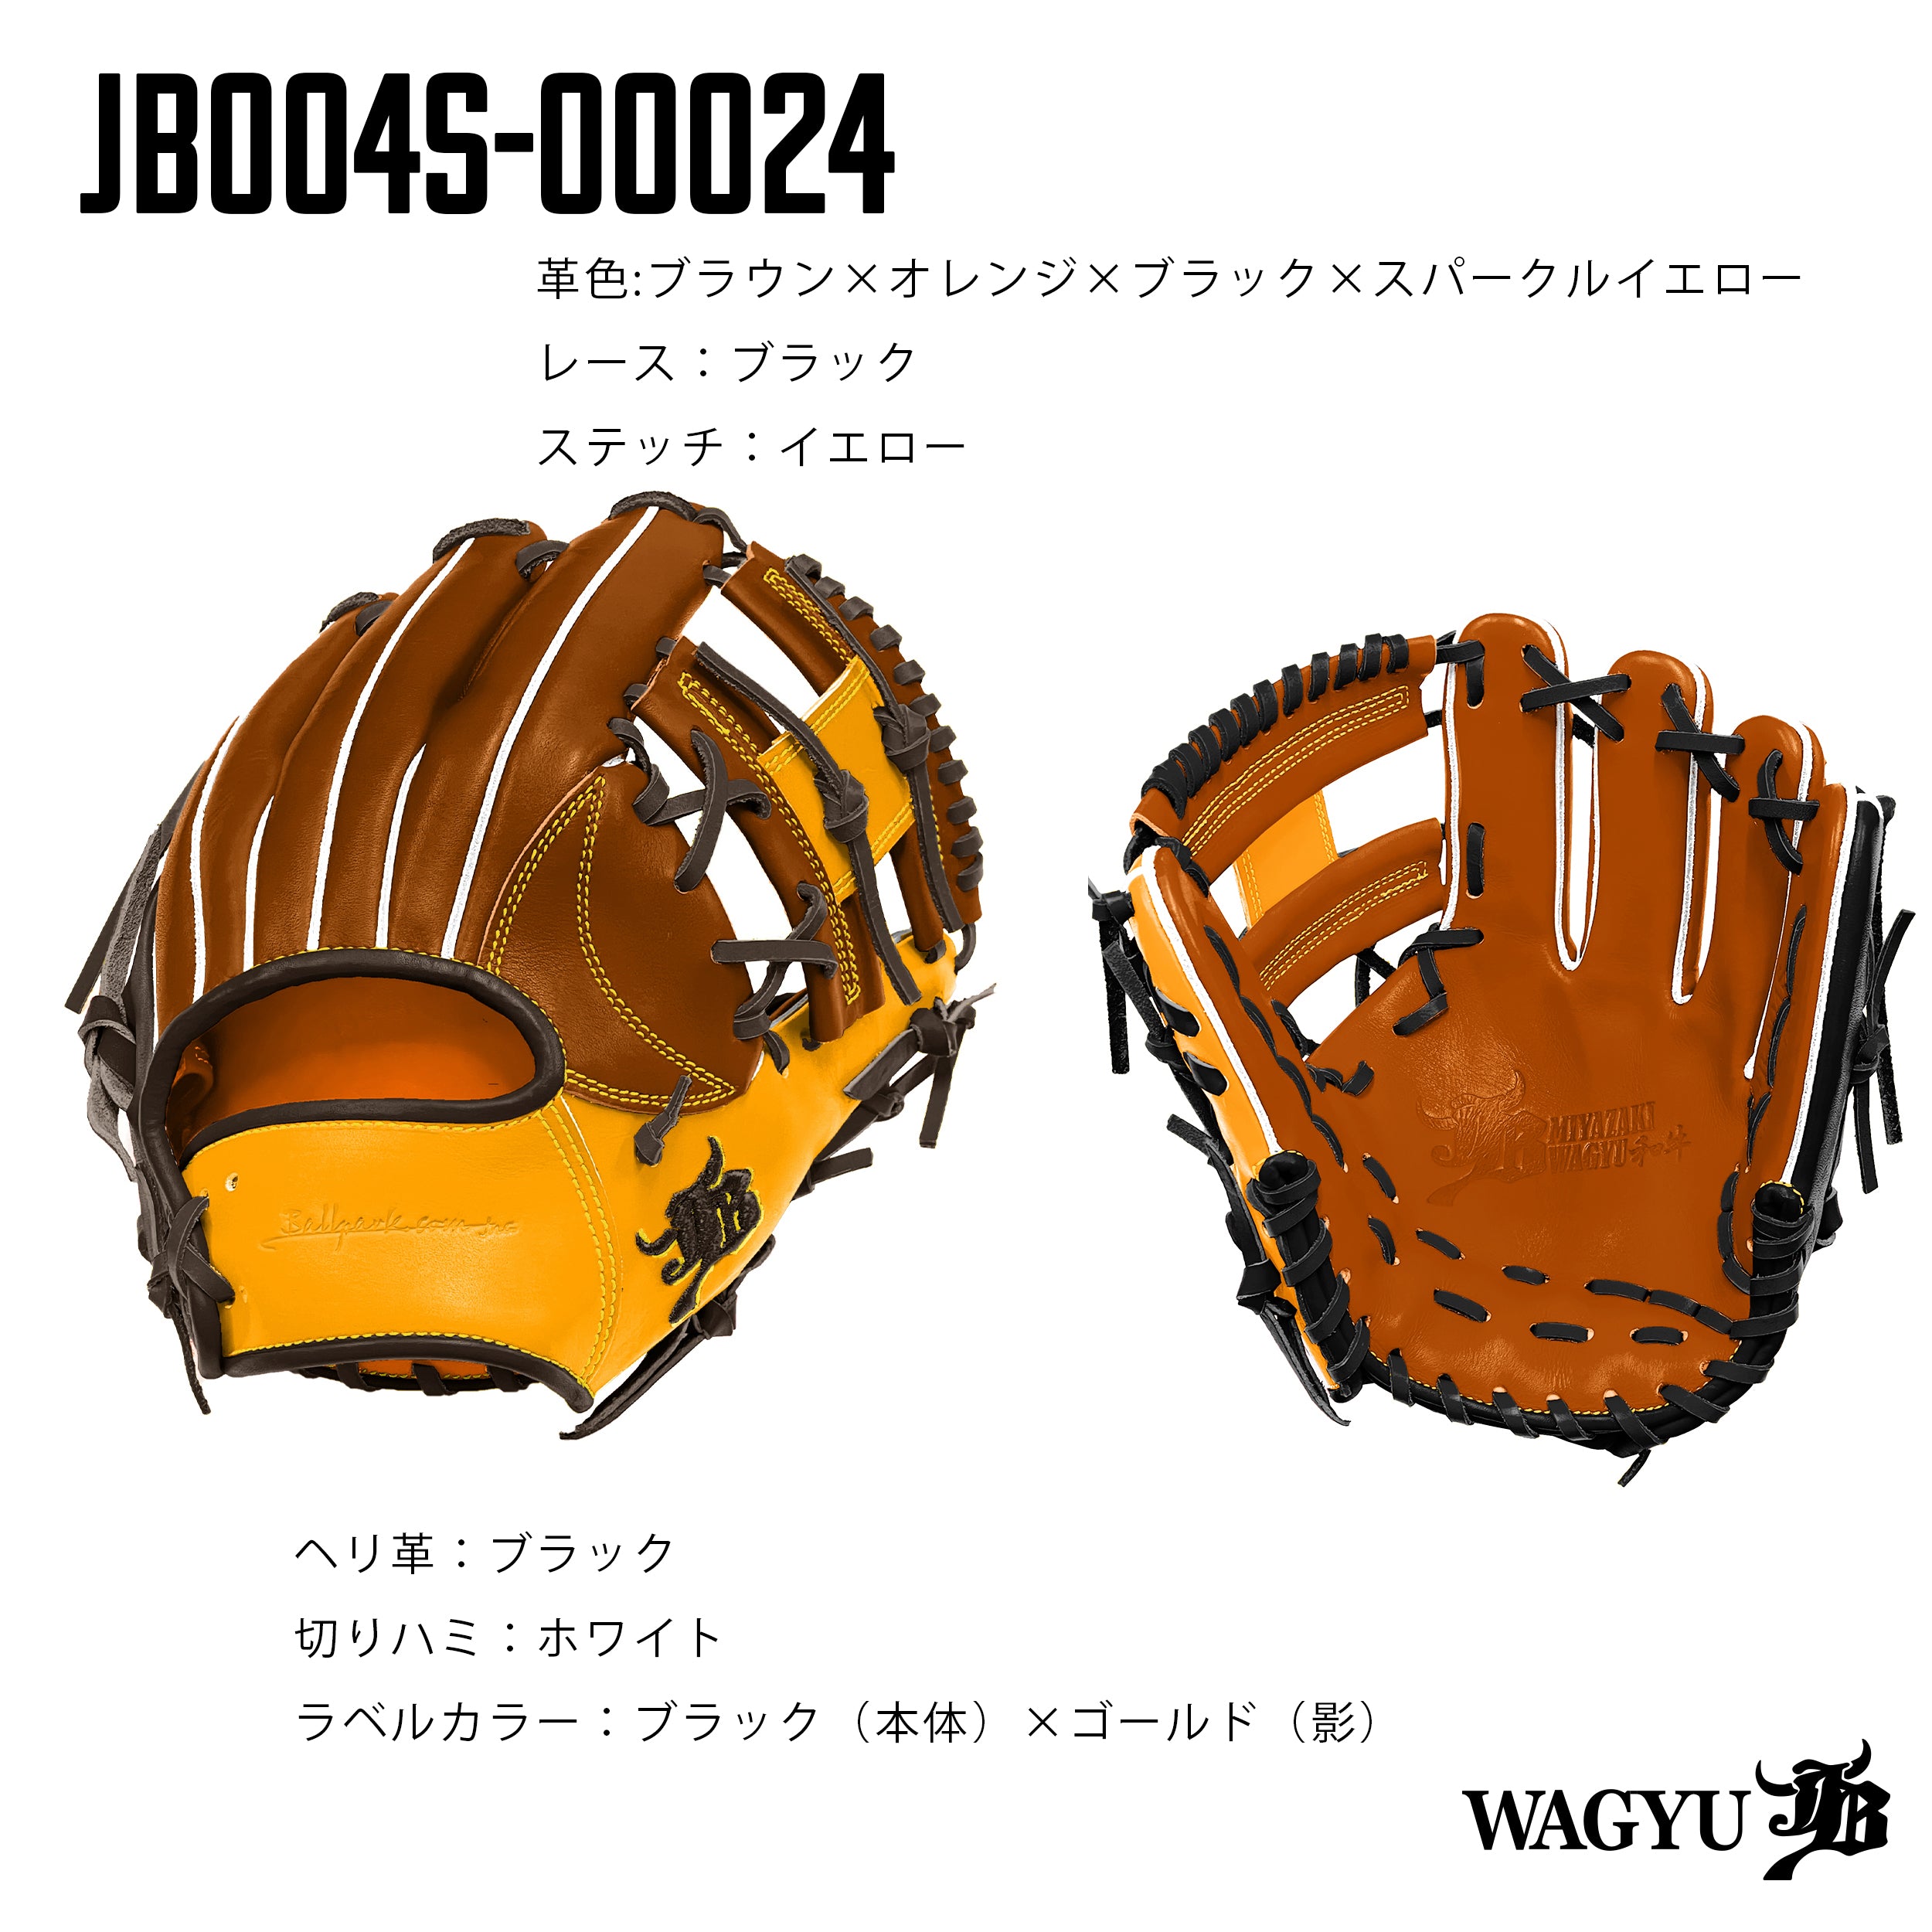 WAGYU JBパターンオーダーグラブ/004Sモデル – ボールパークドットコム